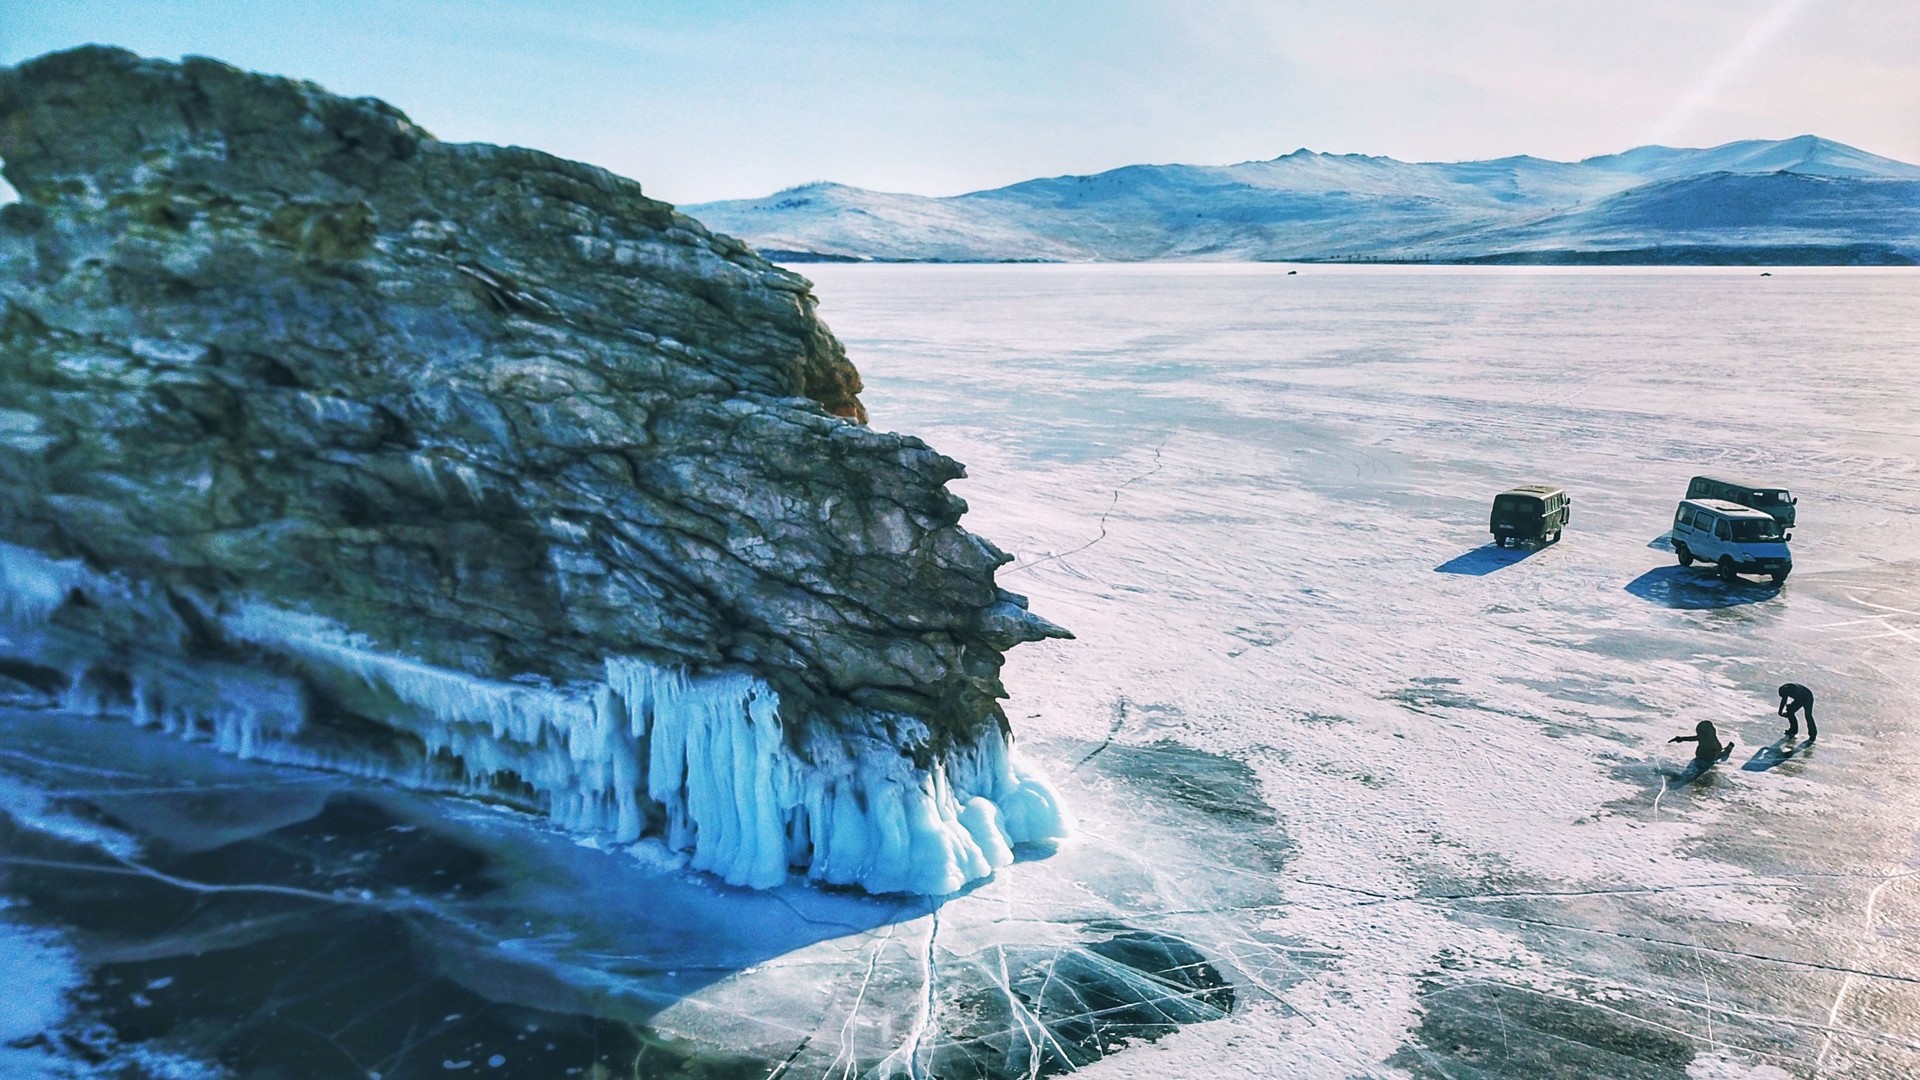 Редкие автомобили перевозят туристов от одной байкальской скалы к другой. Это вот вид на мыс Дракон на острове Огой - одно из самых живописных мест зимнего Байкала, которое захватывает дух с любого ракурса.